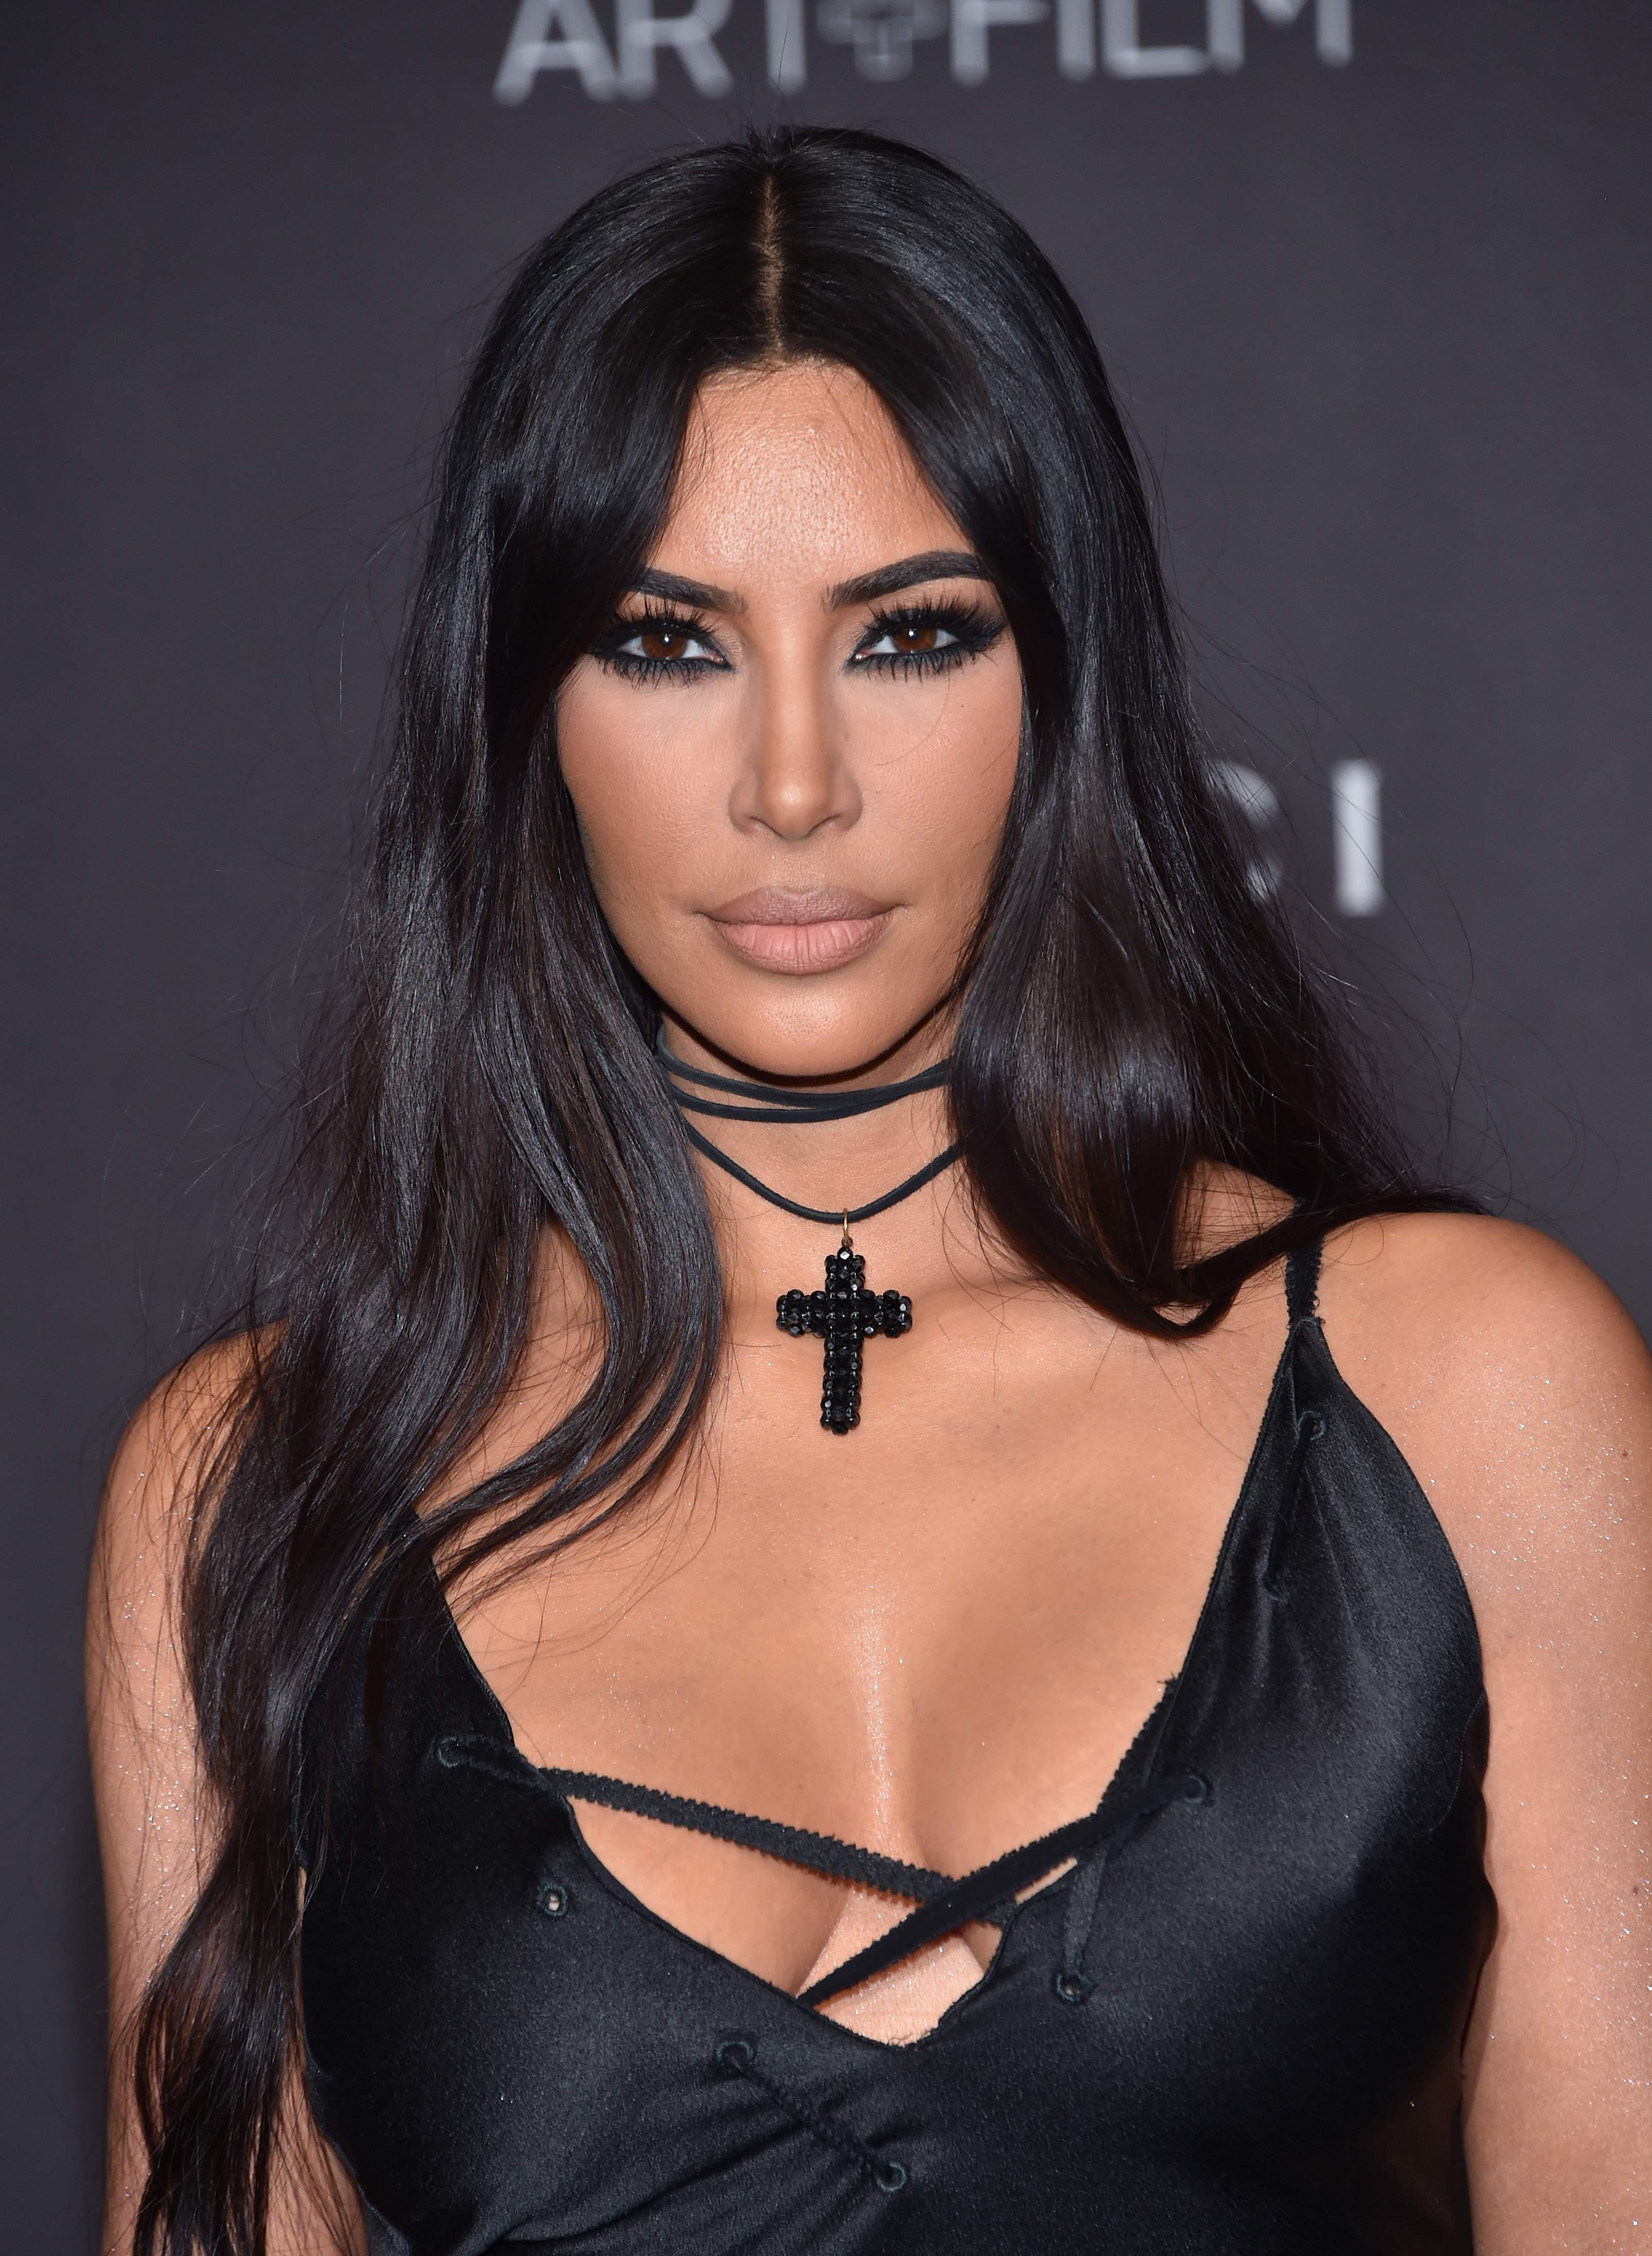 3211px x 4385px - Kim Kardashian's first marriage revelation: 'I got married on ecstasy'